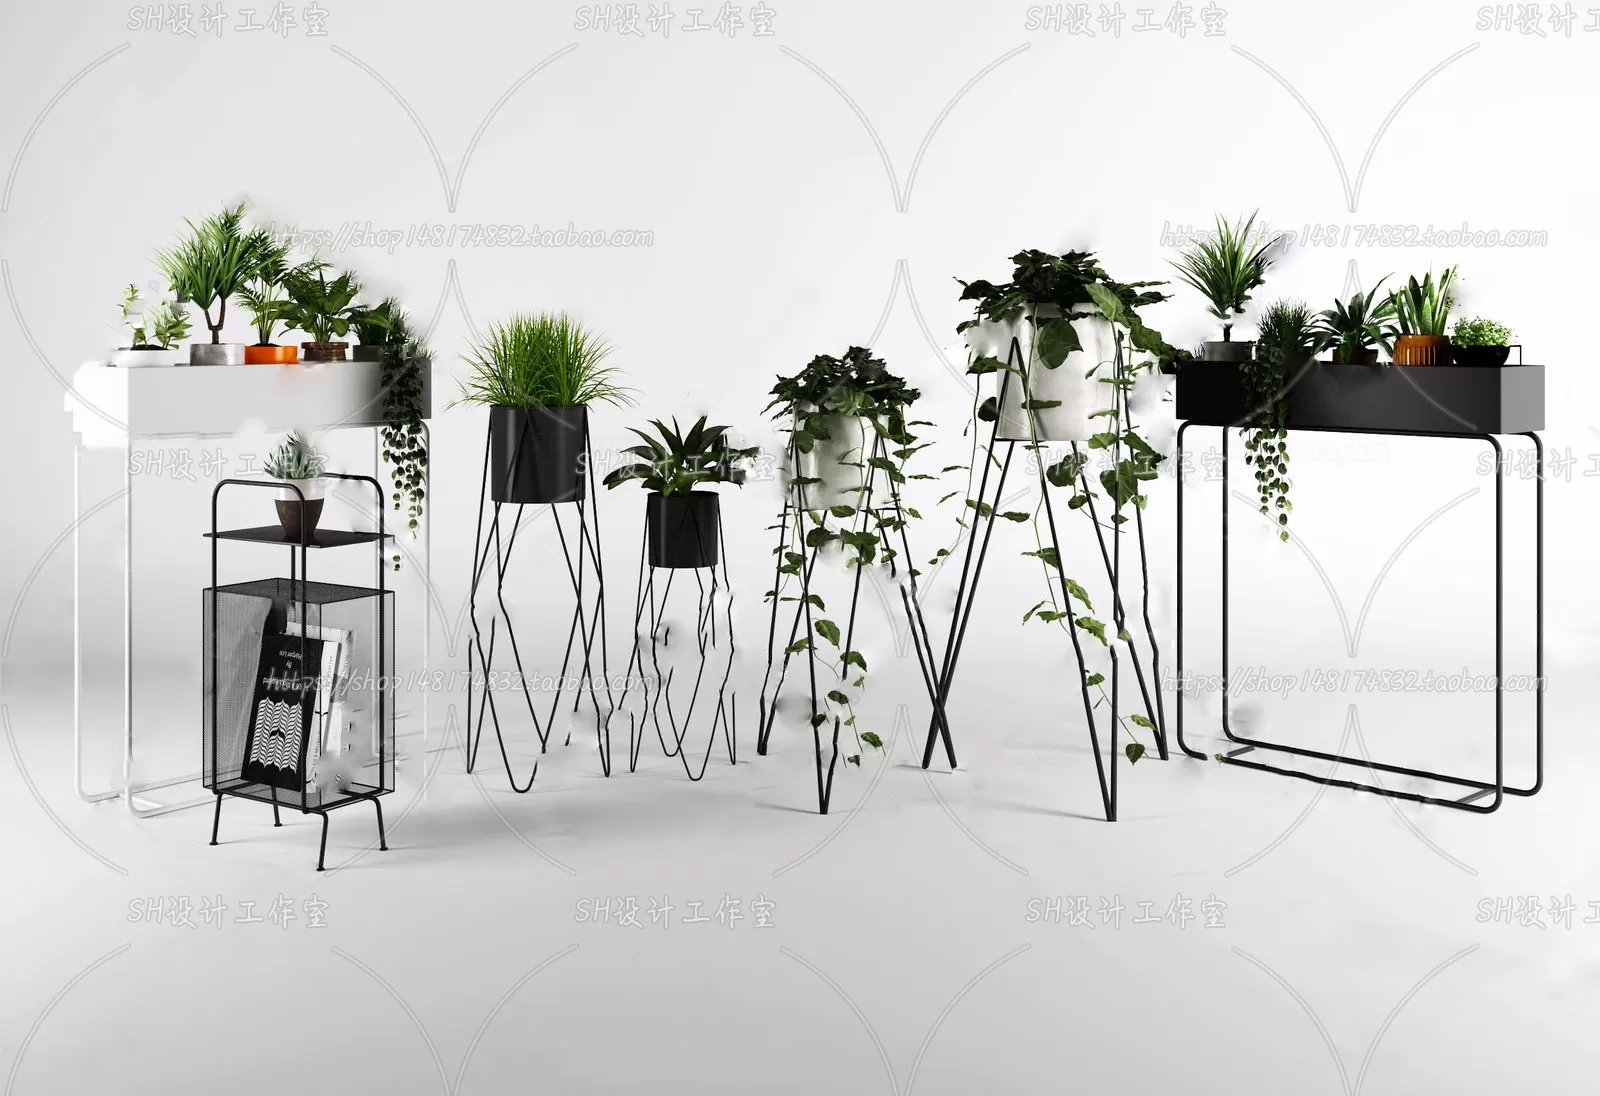 PLANT 3D MODELS – 091